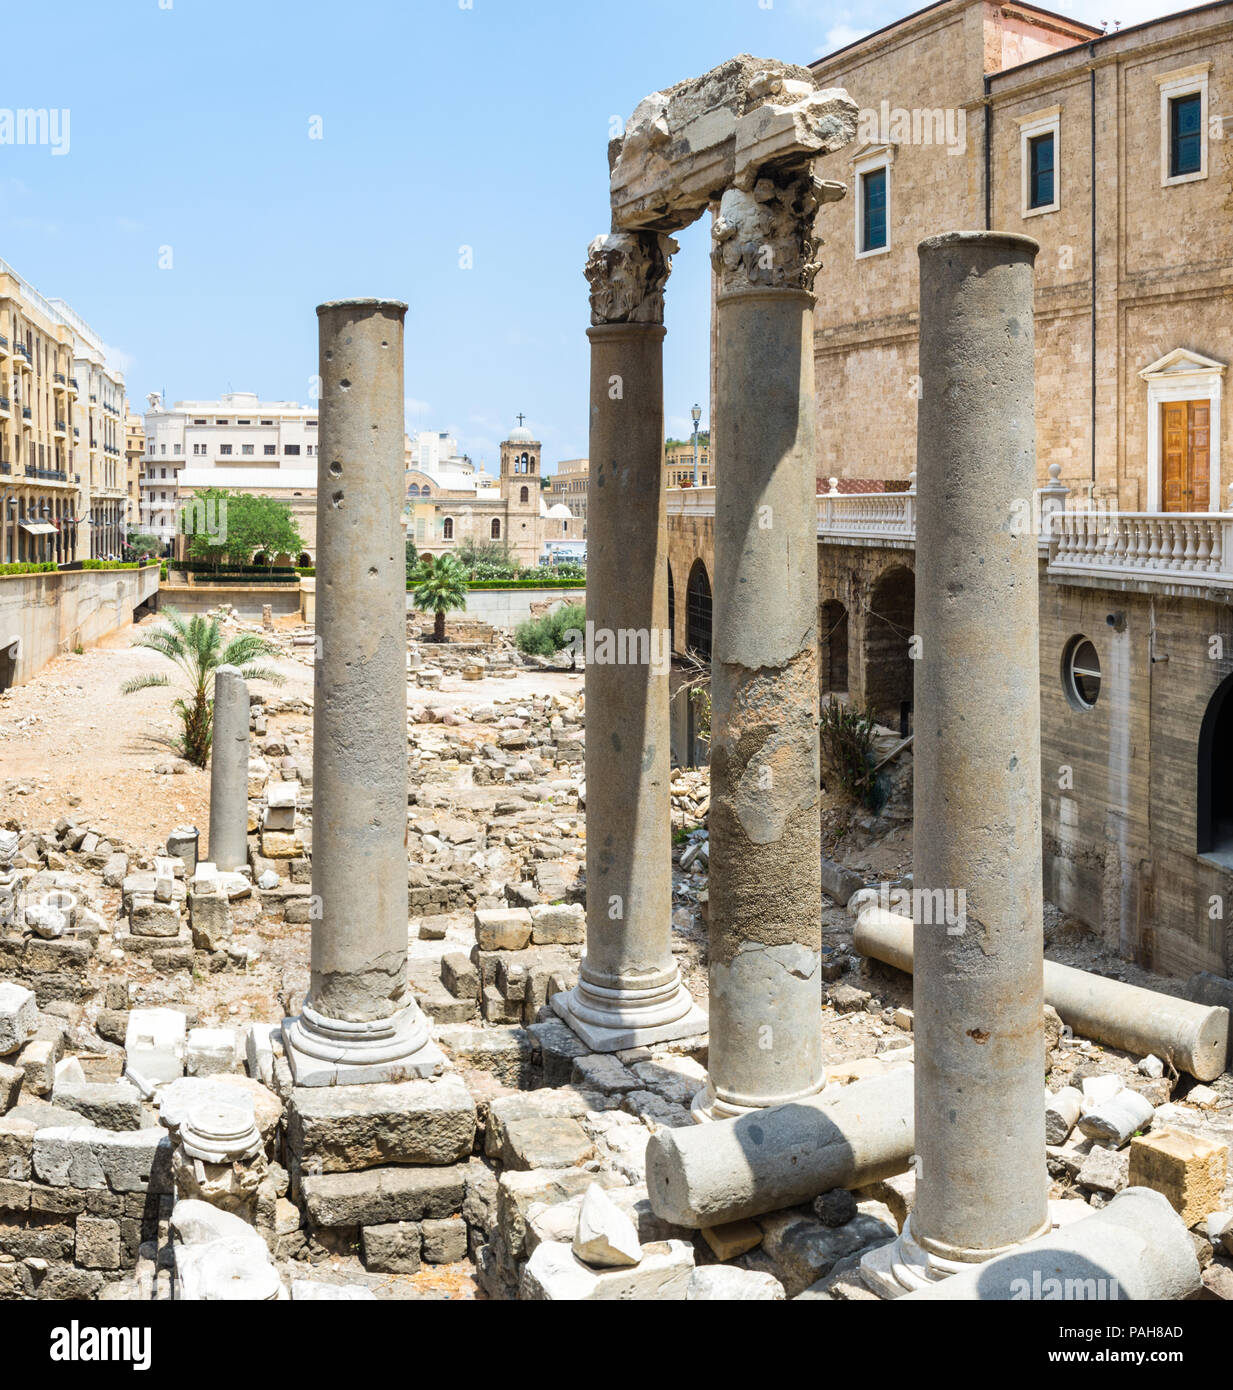 Ruines Romaines colonnes près de Cathédrale orthodoxe Saint Georges, au centre-ville de Beyrouth, Liban Banque D'Images